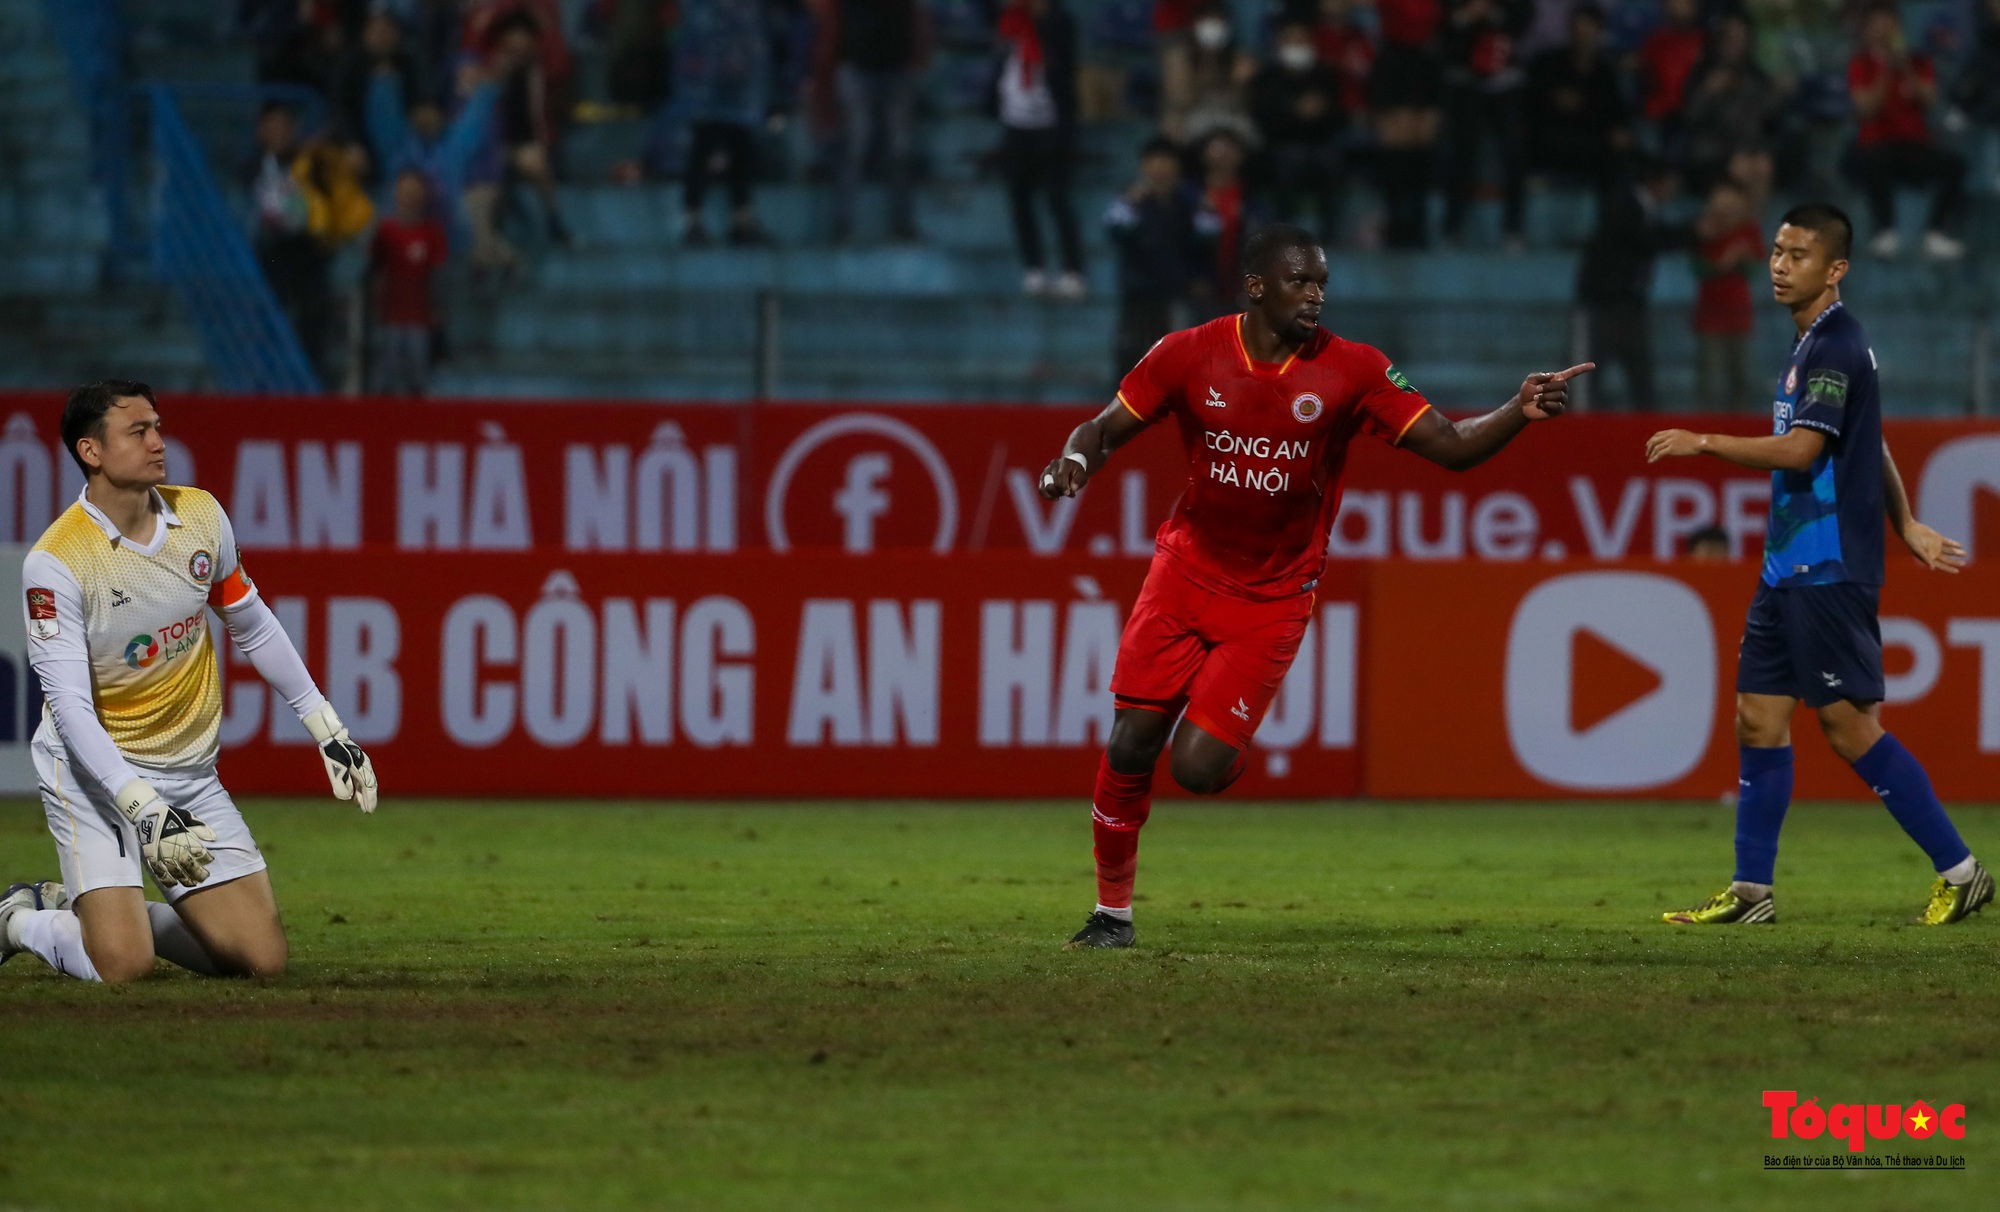 Công an Hà Nội có chiến thắng 5 sao trước Topeland Bình Định trong ngày trở lại V-League - Ảnh 15.